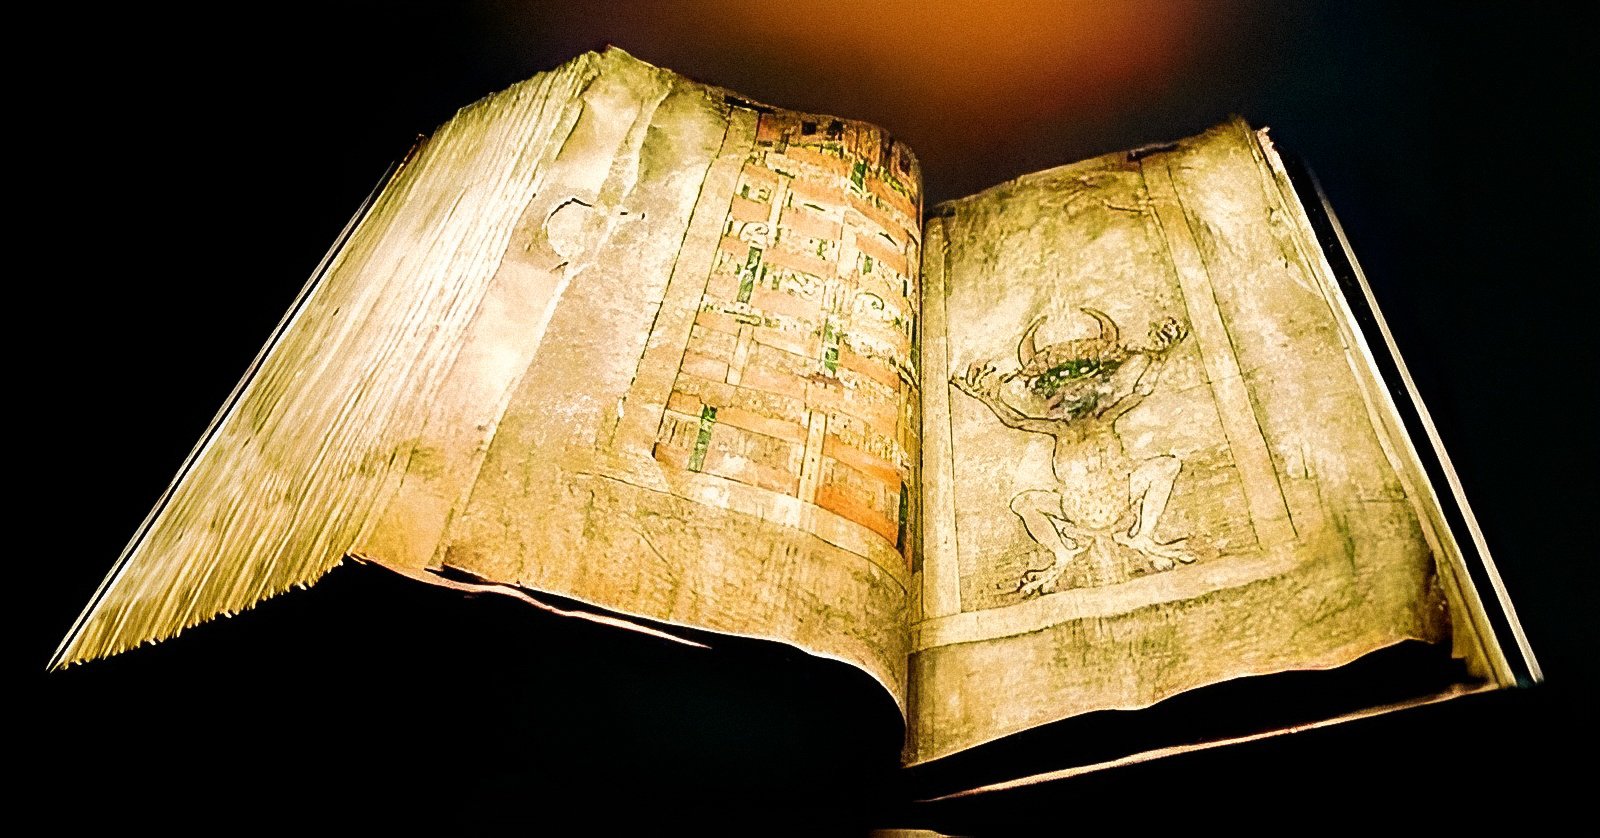 '악마의 성경'으로도 알려진 코덱스 기가스는 세계에서 가장 크고 아마도 가장 이상한 중세 사본 중 하나일 것입니다. 지리적 국가